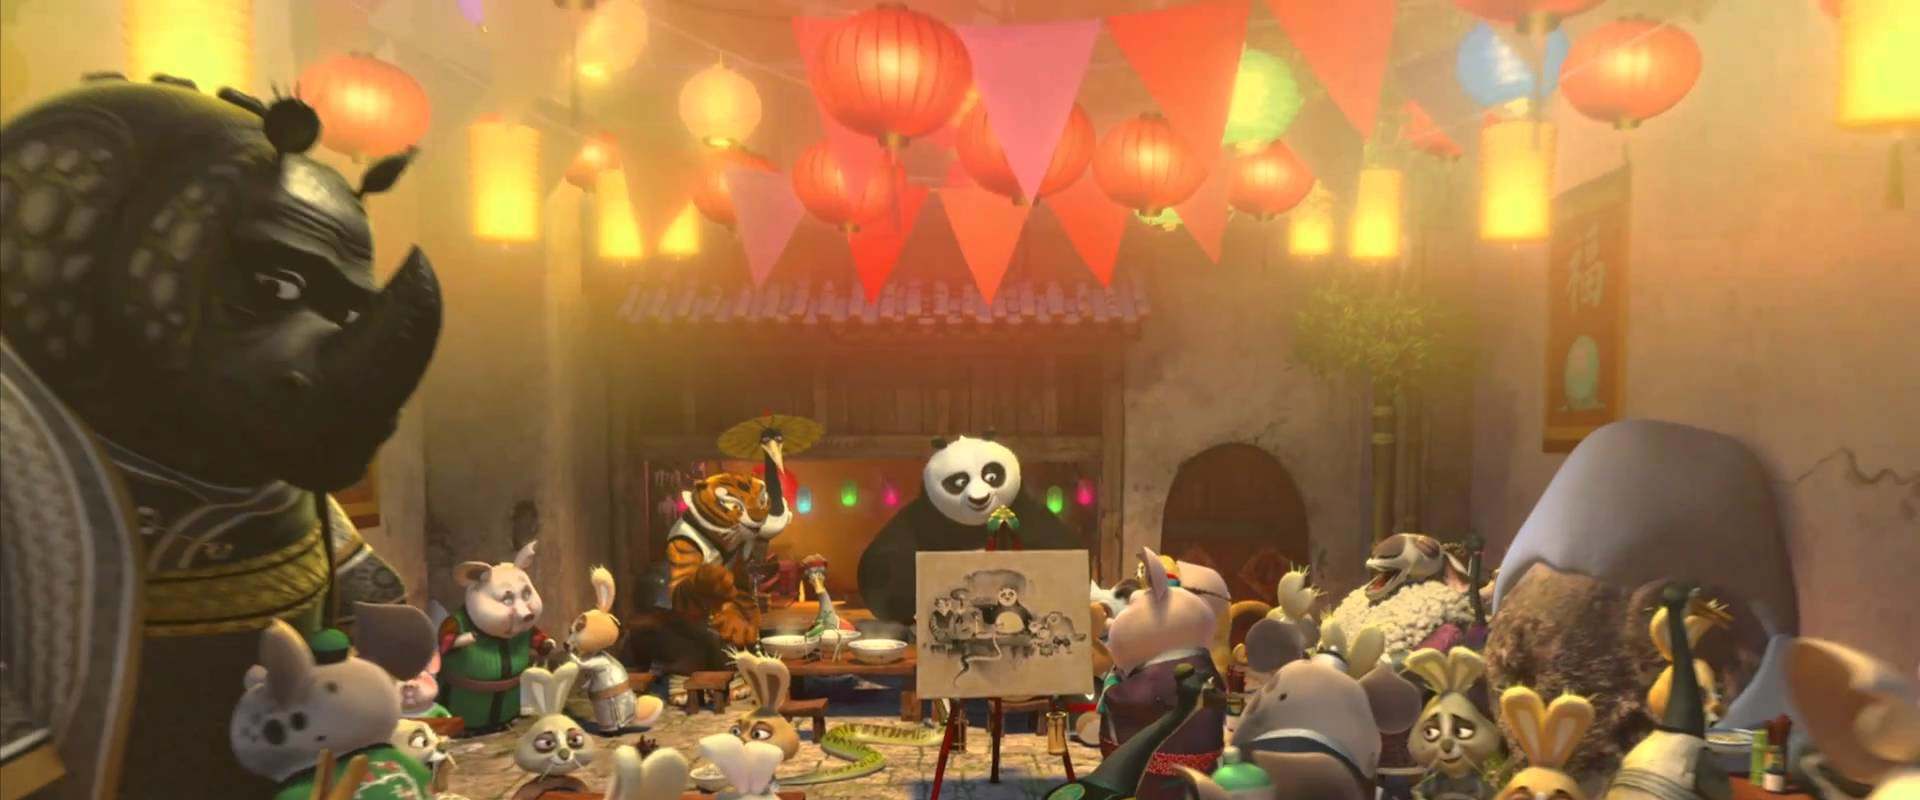 Kung Fu Panda Holiday background 1